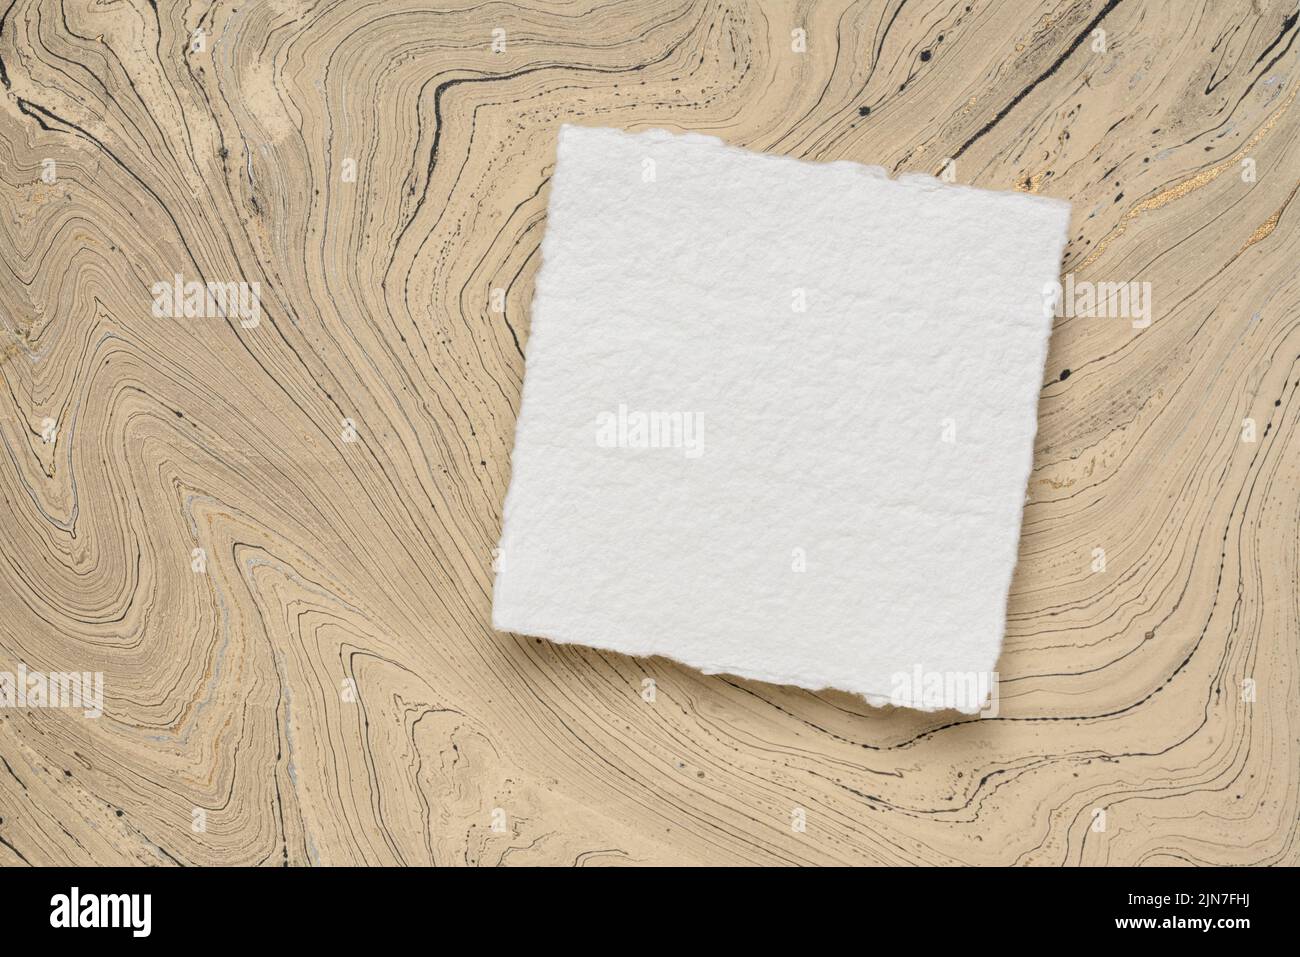 Pequeña hoja cuadrada de papel blanco Khadi contra papel de mármol Foto de stock